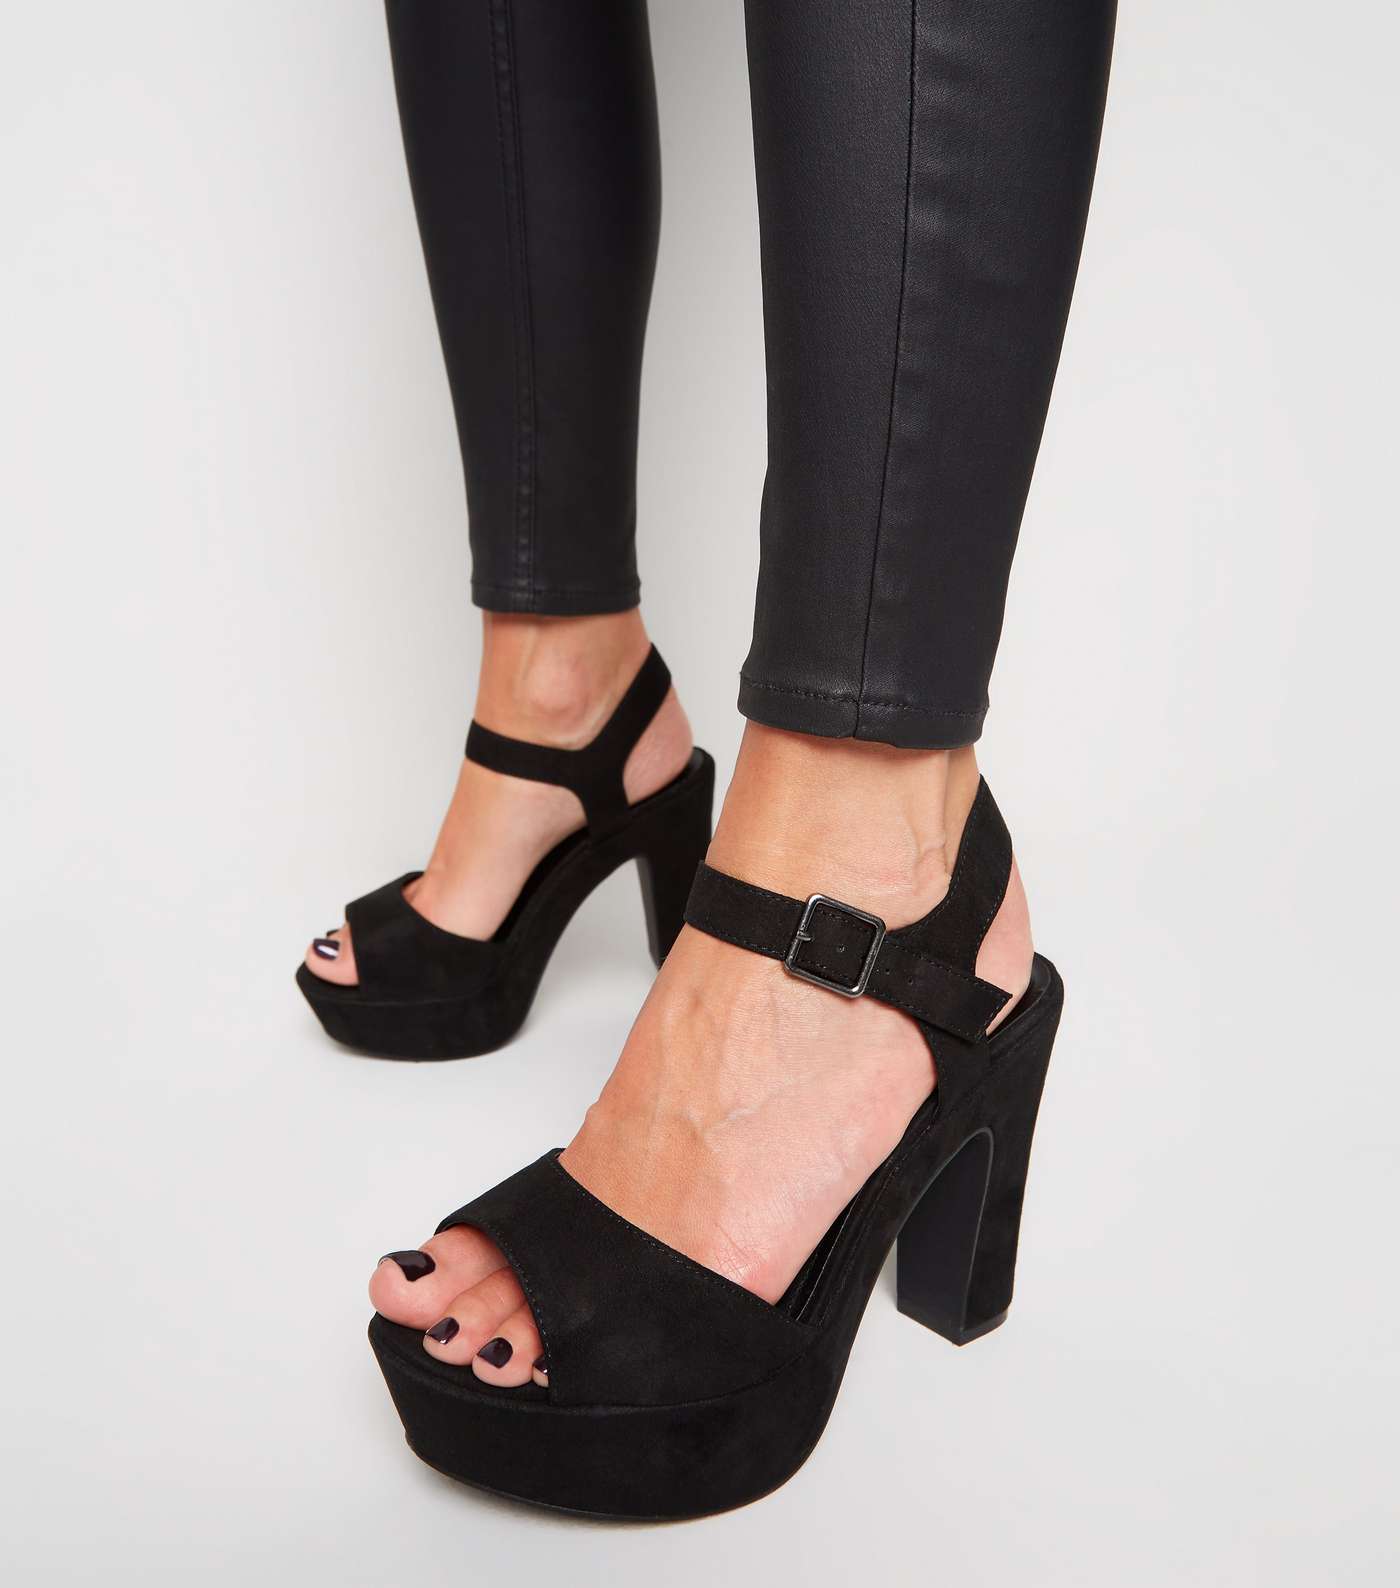 Wide Fit Black Suedette Platform Heeled Sandals Image 2